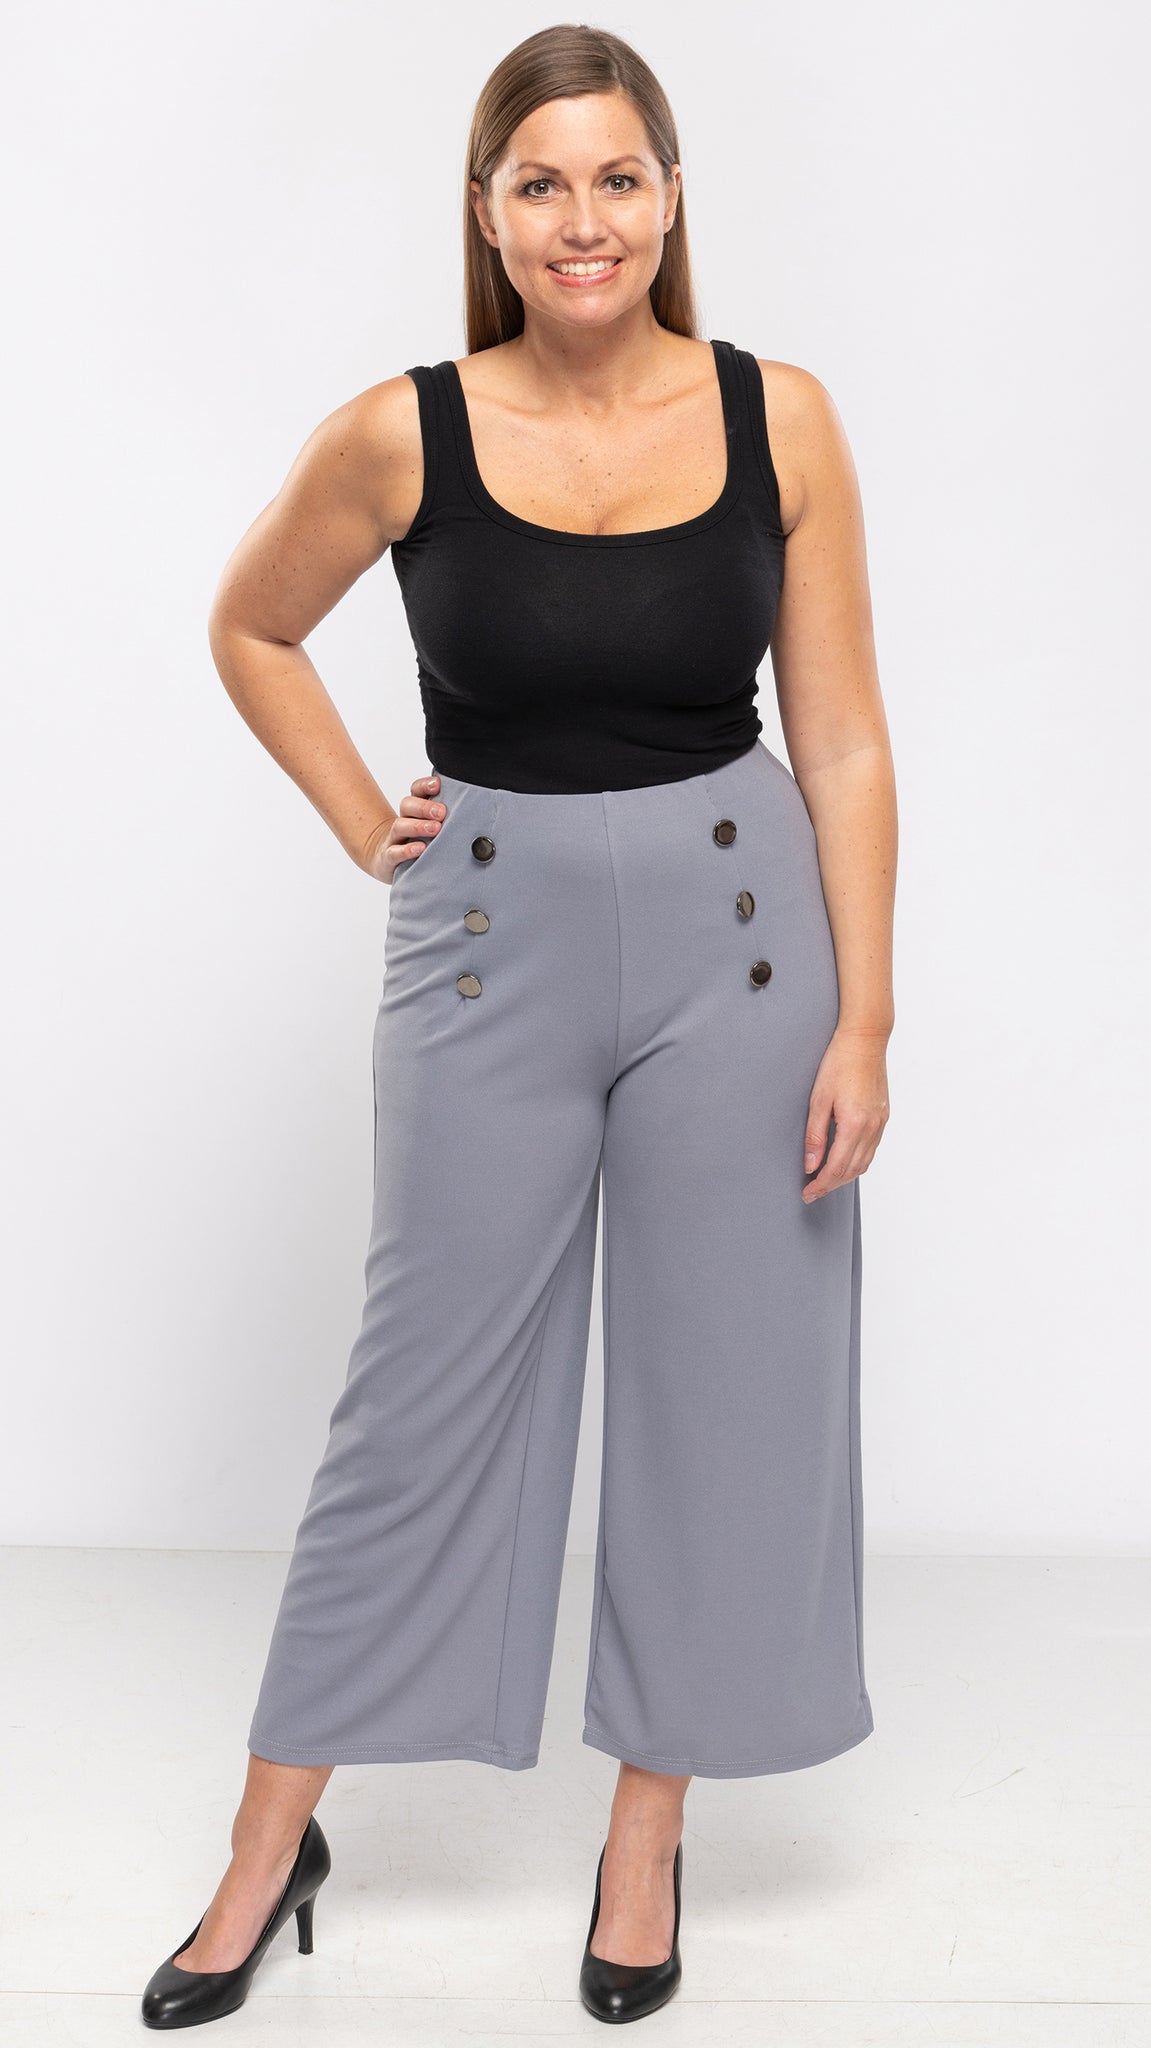 Women's Fancy 6 Button Stretch Pants-2 Colors/4 Sizes-8pcs/pack